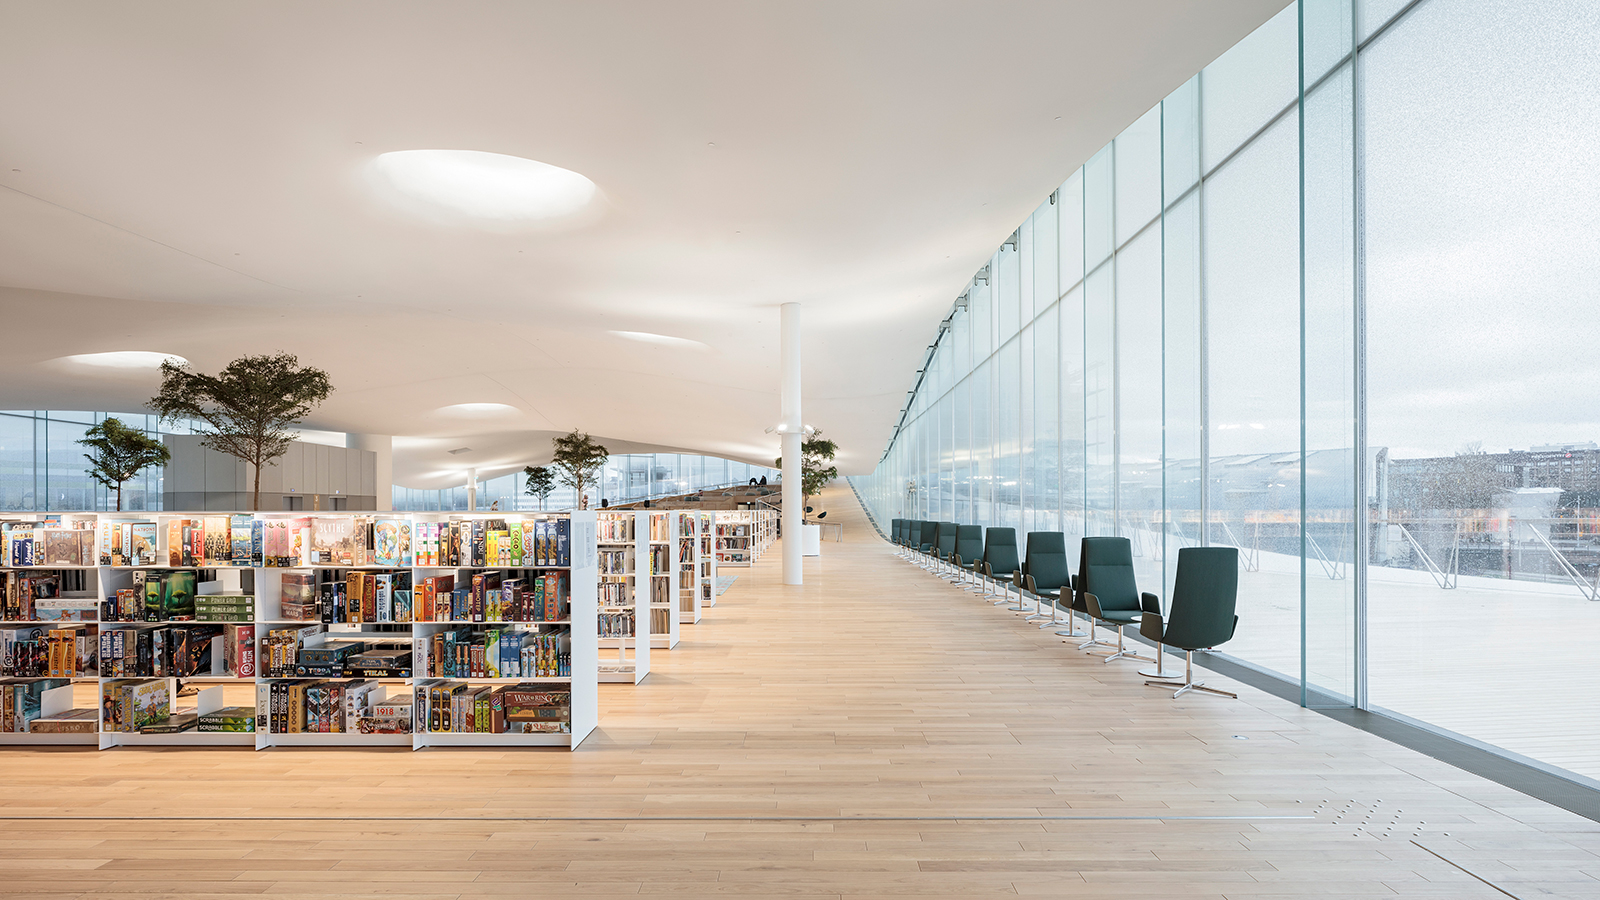 Oodi library in Helsinki